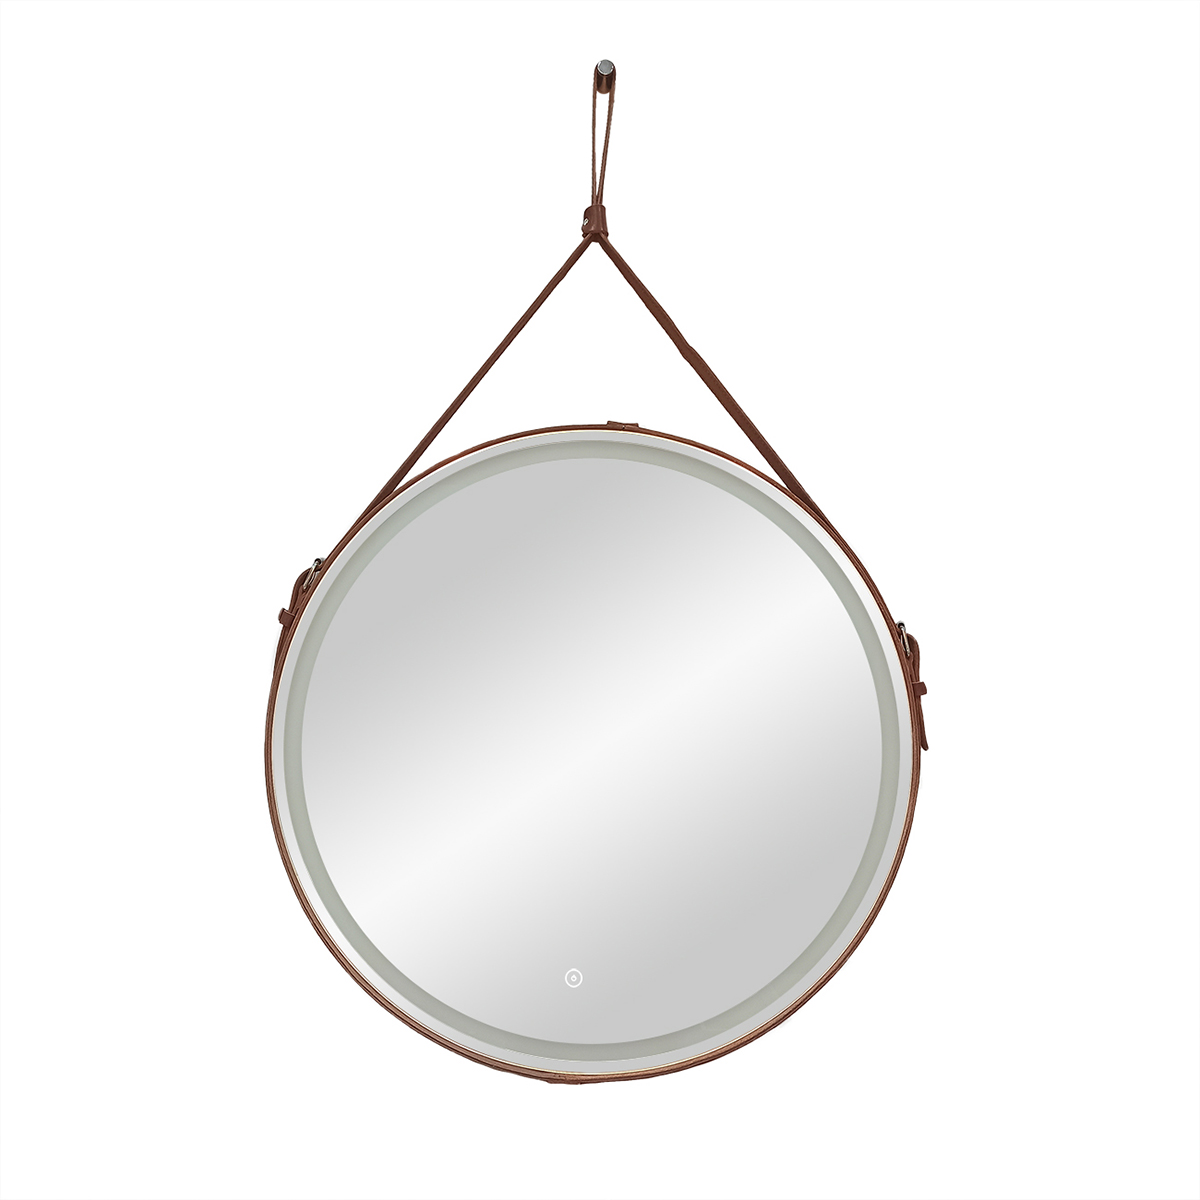 Зеркало Continent Millenium Brown D800 круглое, с LED подсветкой, кожаный ремень, коричневый